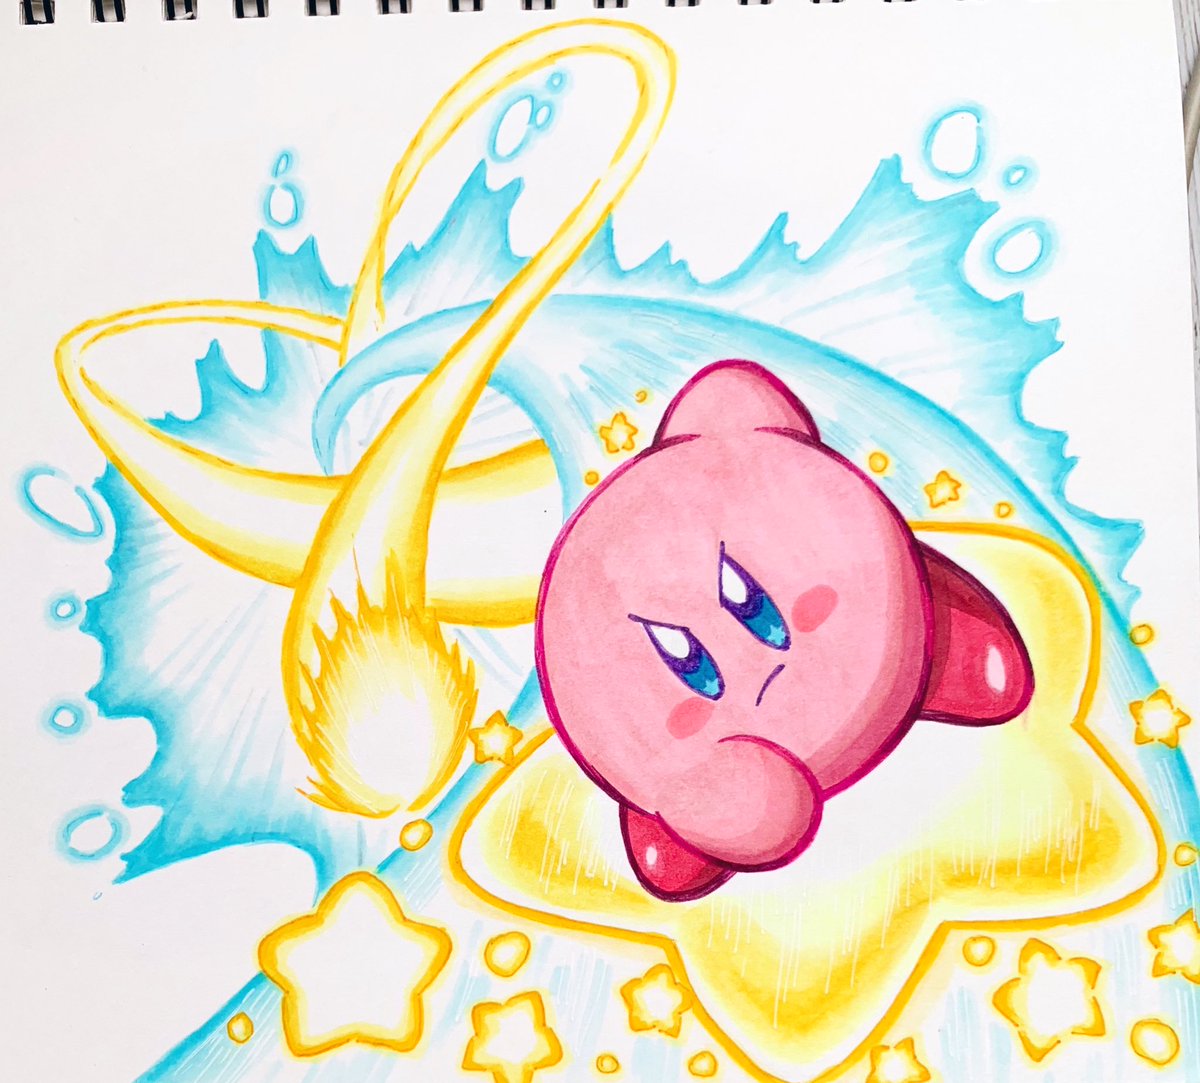 あら カービィ 強くてかっこいい Kirby カービィ Illust イラスト